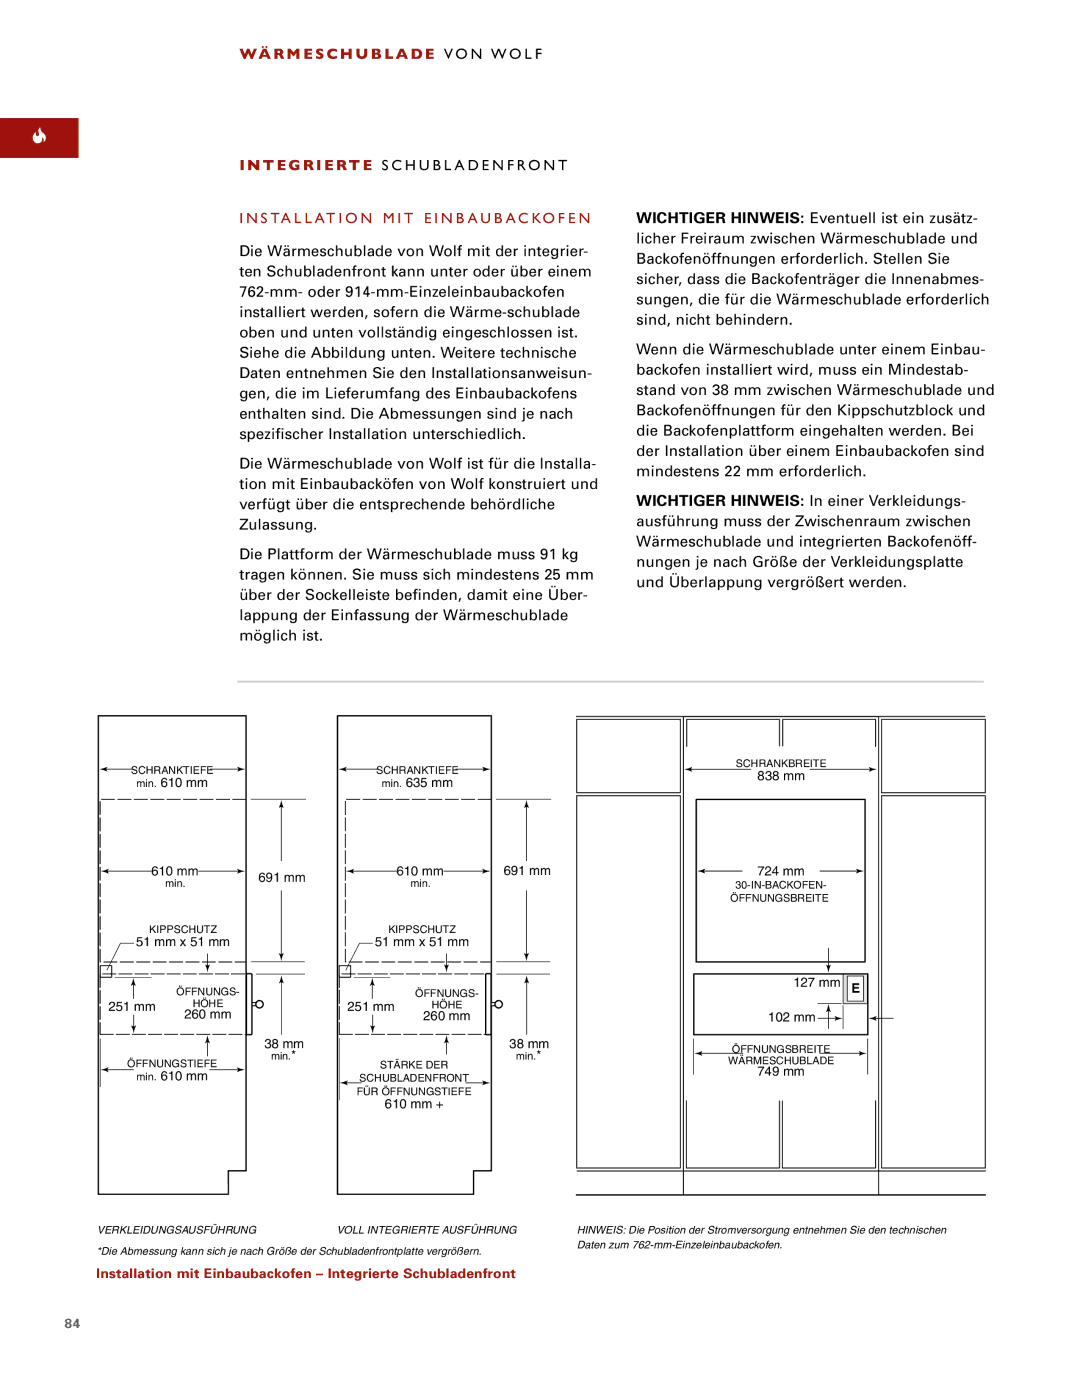 Wolf ICBWWD30 installation instructions Installation mit Einbaubackofen Integrierte Schubladenfront 